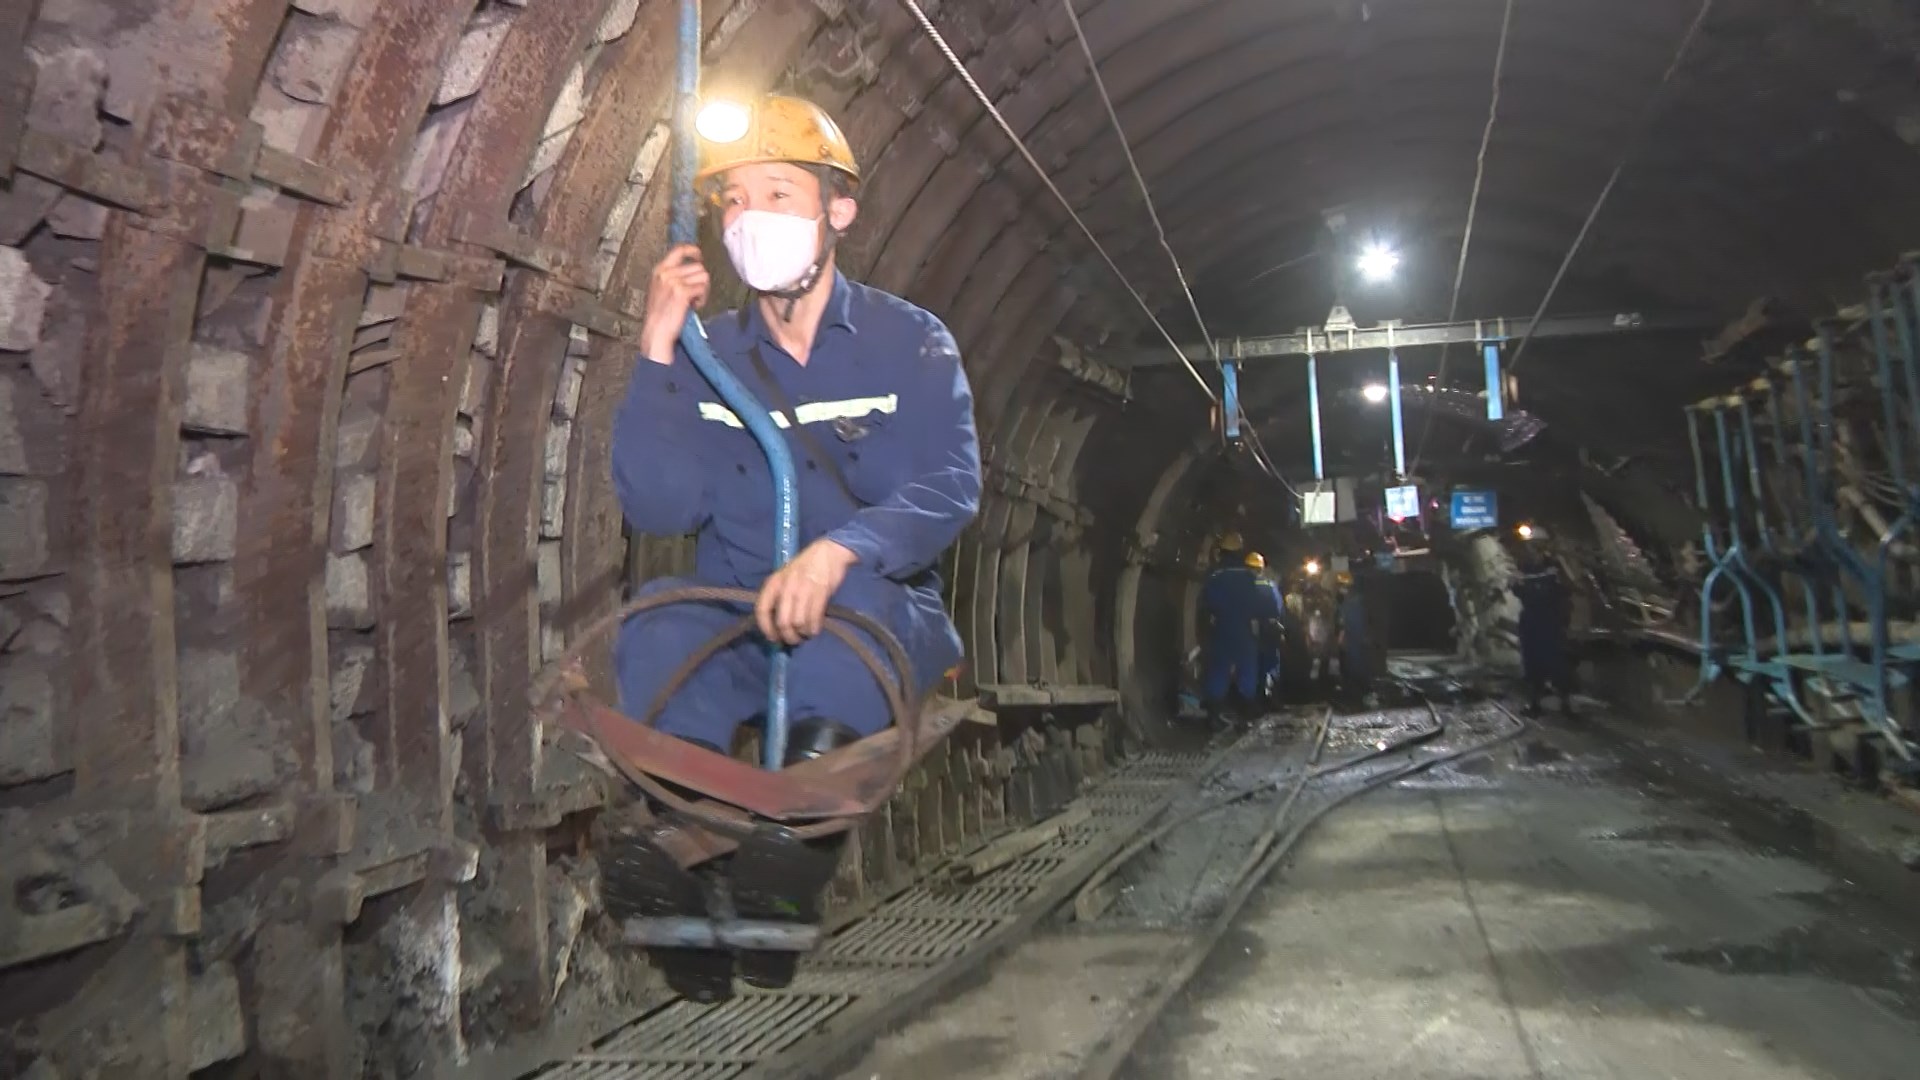 Tời chở người dạng ngồi của Công ty CP than Hà Lầm mới được đưa vào phục vụ thợ mỏ từ tháng 8/2020.